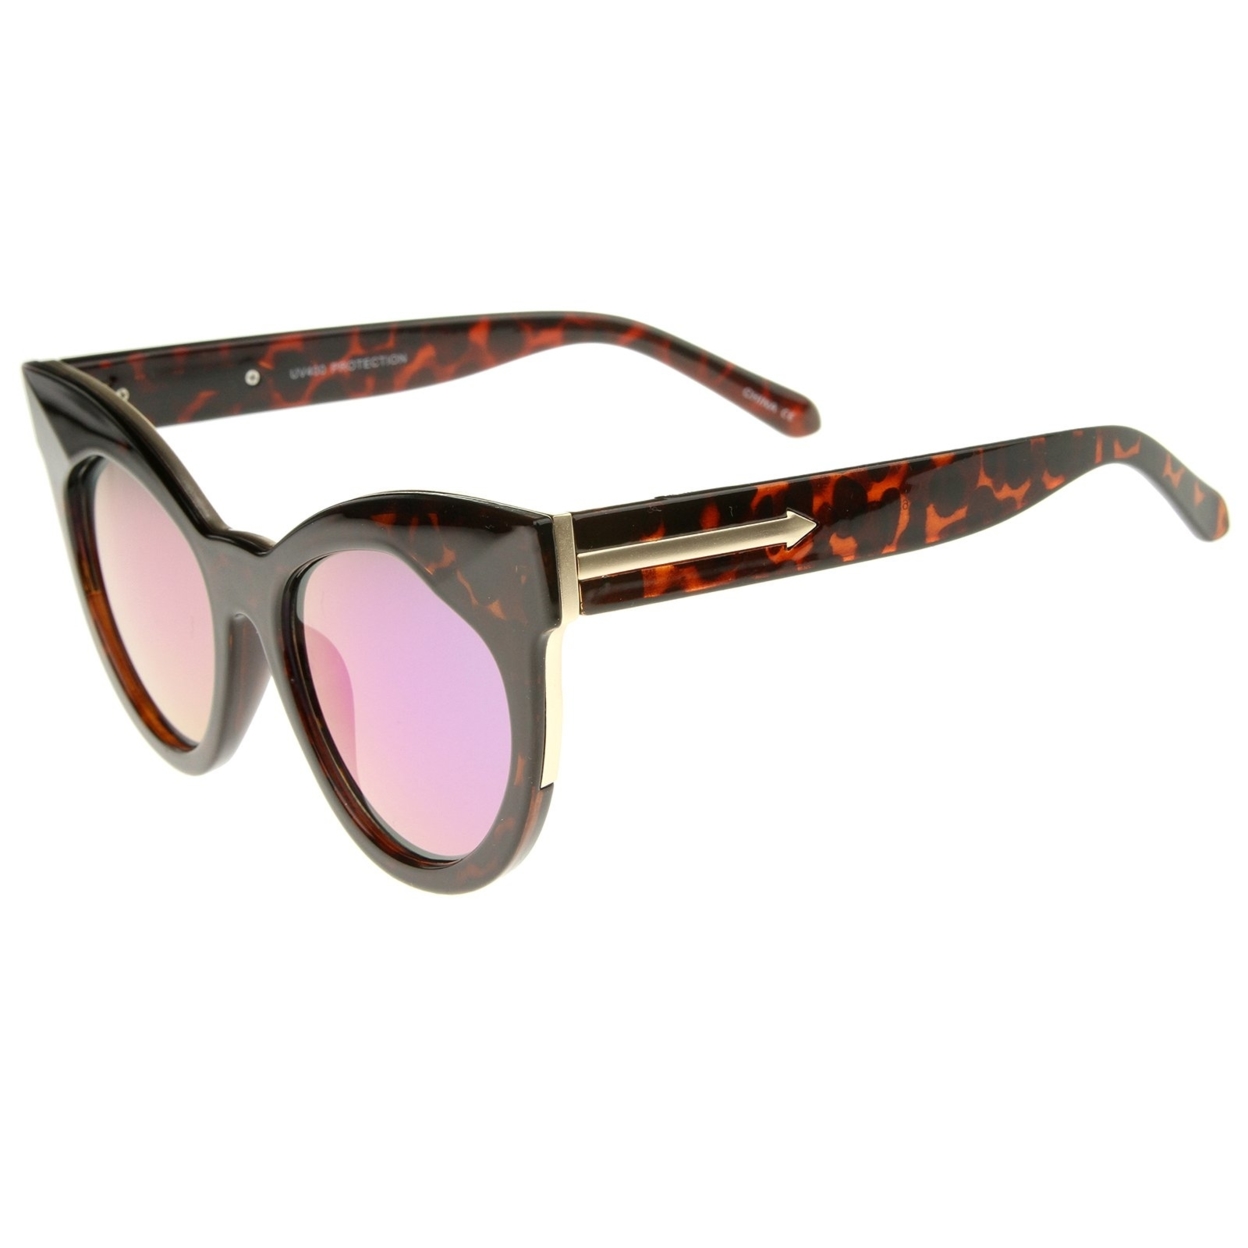 Women's Oversize Chunky Frame Iridescent Lens Cat Eye Sunglasses 55mm - Black / Orange Mirror